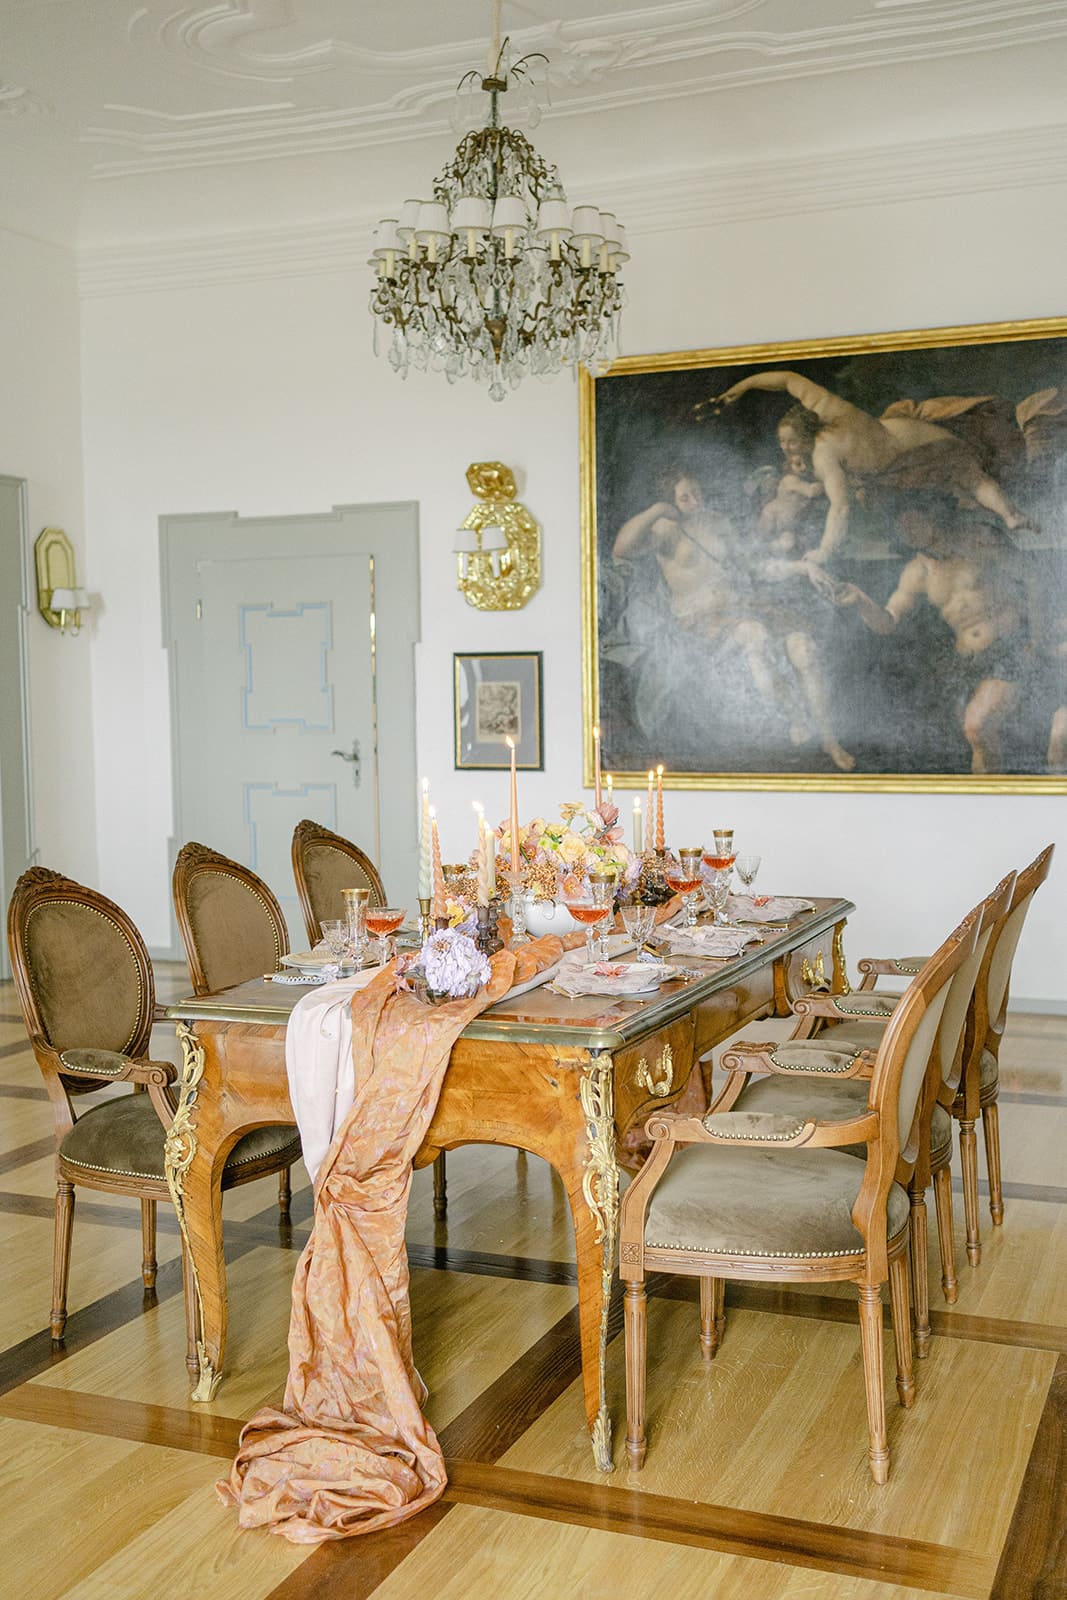 Inspiration für Hochzeitskonzept geschmückter Tisch mit Tischlaeufer, Blumen, Kerzen in altem deutschen Schloss mit Kronleuchter